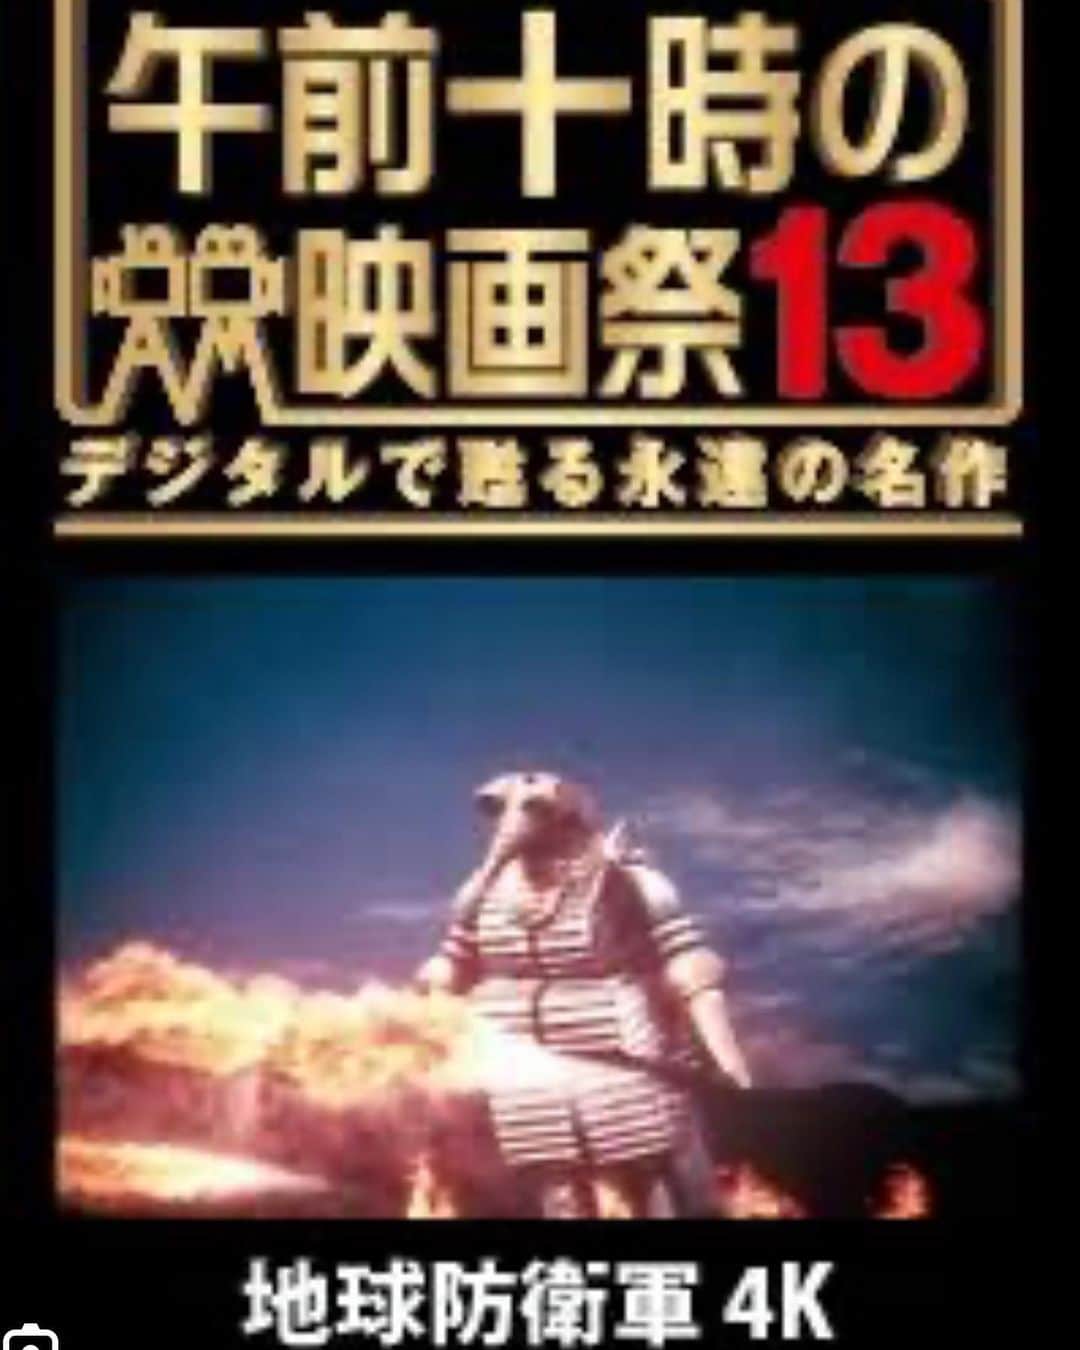 笠井信輔さんのインスタグラム写真 - (笠井信輔Instagram)「今週土曜日、長野県松本の映画館で特撮の映画トークショ開催！  なんと、お子さん、学生は 映画の上映がついて500円！  皆さん、映画「地球防衛軍」を知ってますか？  66年前に 日本で初めて作られたSF映画！  日本で初めて巨大ロボットが登場する（モゲラ‼️）  日本で初めて人型の宇宙人が登場する  円谷英二監督のミニチュアワークが炸裂する歴史的特撮映画  その記念碑的名作が4Kデジタルリマスター版となって蘇ったのです  【午前十時の映画祭13】 全国のシネコンで8月4日から（地域によっては18日から）「地球防衛軍」の公開が始まります  それを記念して、 長野県、松本の映画館、 『松本シネマライツ』で 今週土曜日にトークショーおこないます  実は、日本で初めて60年以上前に作られたSF映画なので ツッコミどころ満載で とても楽しいのです  トークショーも爆笑トークになること間違いありません  でも、それを「子供騙し」と馬鹿にできないのがこの作品の深いところ  『初めて作る』ってどういうことなのか？と言うことです  ウルトラマンの遥か前に作られている  宇宙人て、どんな感じなの？と言う 宇宙船の中って、どんな風なの？ 宇宙人て、どんな風にしゃべるの？  それを「初めて作る」ってどういうことなのか！  実は、この映画が、日本人みんなが知っている「宇宙人の喋り方」を決定づけた映画なんです！  ウルトラQでもウルトラマンでもなかった‼️  そう思って見ると、ほんと、感心、興奮、感動的！  初代ゴジラが作られてからわずか3年後 カラーで、ワイドスクリーンで 「怪獣が登場しない特撮映画」を作ろう！と言うその意欲  そして、さすが円谷英二監督、ミニチュアワークは精巧で見事 金かかってます(笑)  しかも、サンダーバードよりも早くサンダーバード的な見せ方をしていると言う ここがまた凄い所で  イギリスのサンダーバードのスタッフは、地球防衛軍を見てからサンダーバードを作ったんじゃないかなとまで考えてしまう（笑）  しかも、4Kリマスターで 新作映画並の画質に！ 音響も擬似STEREOを開発していて、素晴らしい！  サブスクでもDVDでもとにかく傷が多かった地球防衛軍が キズなしの状態で見られるなんてほんとに素晴らしい  白川由美さん、河内桃子さんといった女優さん達の肌も美しい（笑）  トークショーをご一緒するのは 4K化プロジェクトのリーダー 清水俊文さん  この方の裏話がまた面白いんですよ  楽しいトークショーにしたいと思います  そして、最後に、趙目玉のなお知らせ なんと学生さん、お子さんは 上映とトークショーが付いて 500円です！  一般の方でも、 1100円  実は1部を除いて、全国のシネコンで「地球防衛軍」は学生さん、お子さん500円です！  今時、シネコンで500円で映画見られませんから  トークショーがついても500円と言うところが、 松本シネマライツ太っ腹‼️  4人家族でお子さん2人でも2000円です  上映は朝9時から 500円なんだから、朝早くたっていいじゃありませんか  とにかく皆さんお待ちしてます 楽しい夏休みの時間にしましょうね！  夏休みにご家族で見に行くなら これでしょう！  ジブリ映画の「君たちはどう生きるか」は素晴らしいけど、 「ミッション・インポッシブル」は楽しいけど お子さんたちには難しすぎます （笑）  小学生のみなさん！ 「地球防衛軍」は 自由研究の題材にできますよーー！  日本ではじめてのSF映画みましたっ！ ここがすごい！っとね  ぜひぜひご来場下さい。お待ちしてまーす」8月2日 10時53分 - shinsuke.kasai